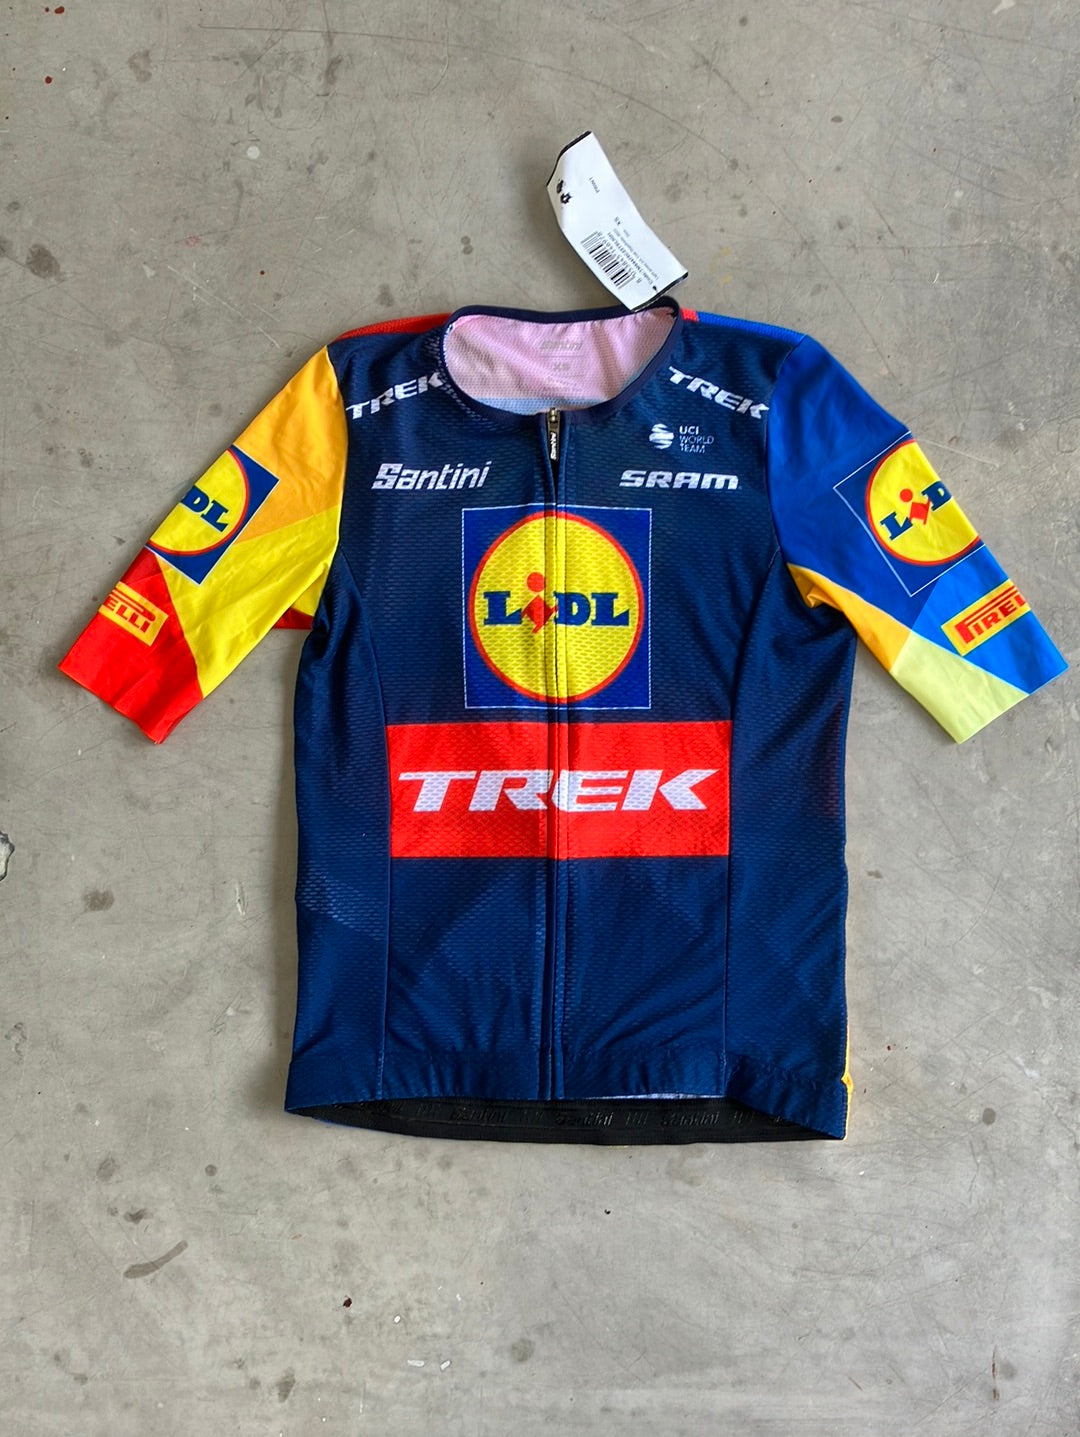 Short Sleeve Summer Jersey | Santini | Lidl Trek | Pro Rider Issued Cy ...